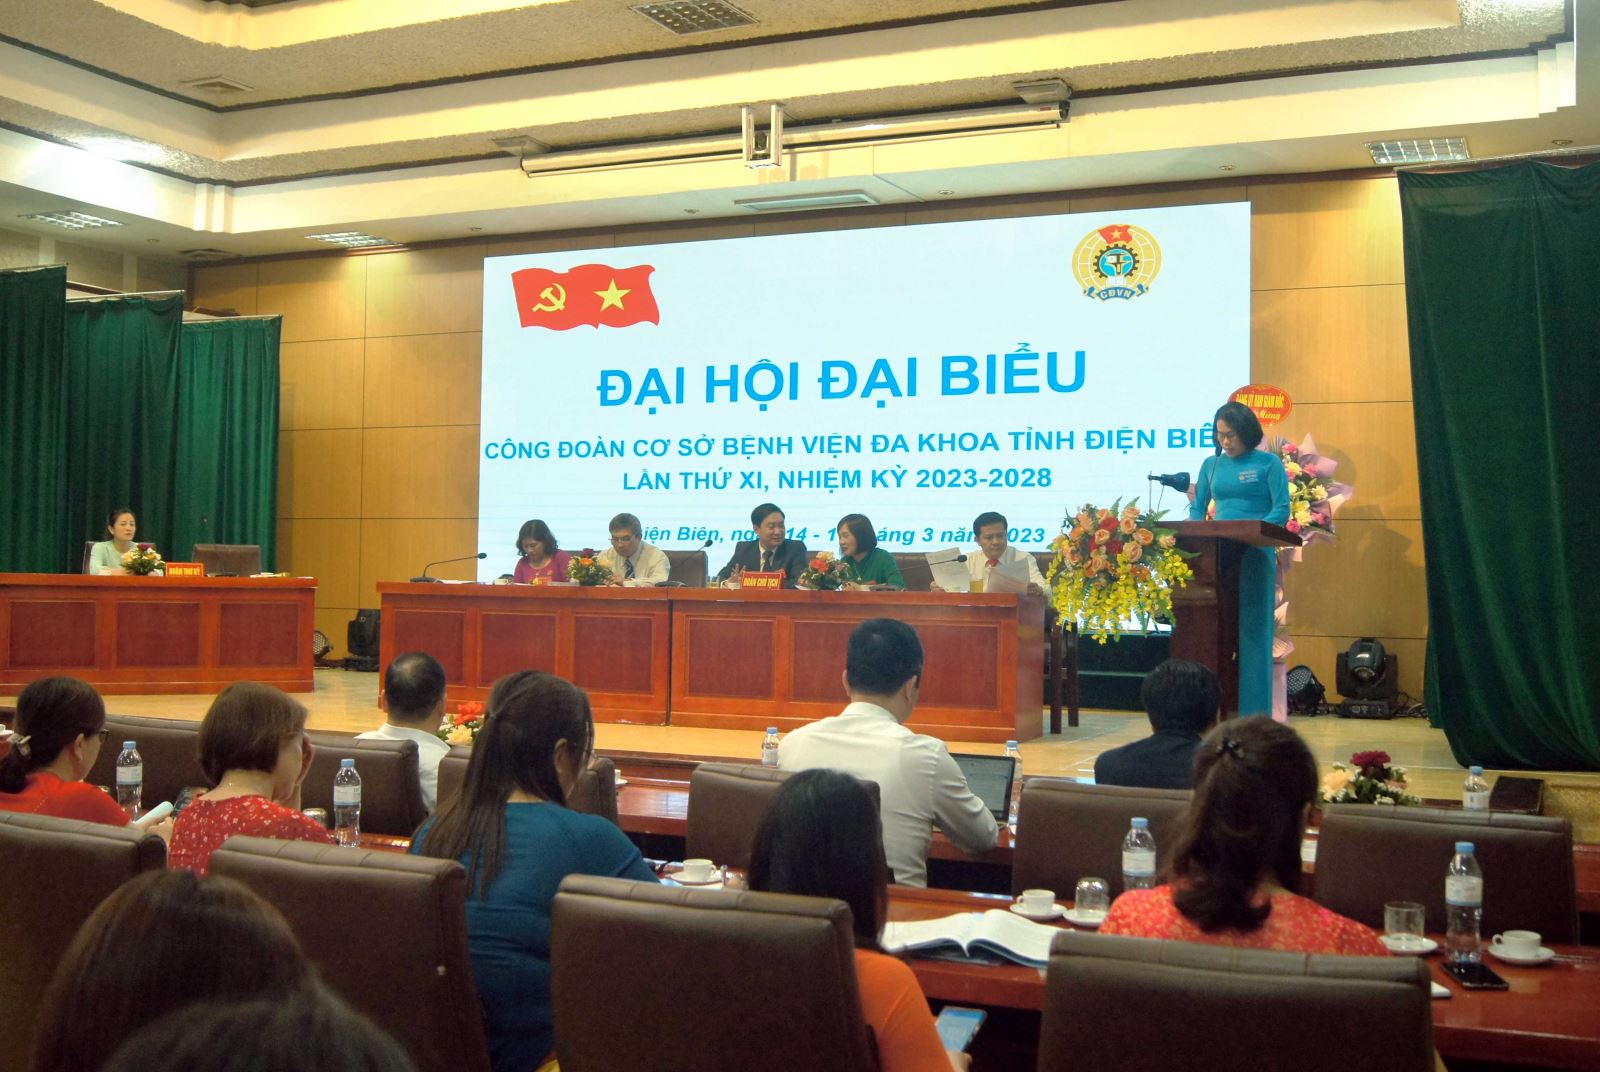 Đồng chí Nguyễn Thị Hiền, Phó Chủ tịch Công đoàn Ngành Y tế phát biểu ý kiến chỉ đạo tại Đại hội